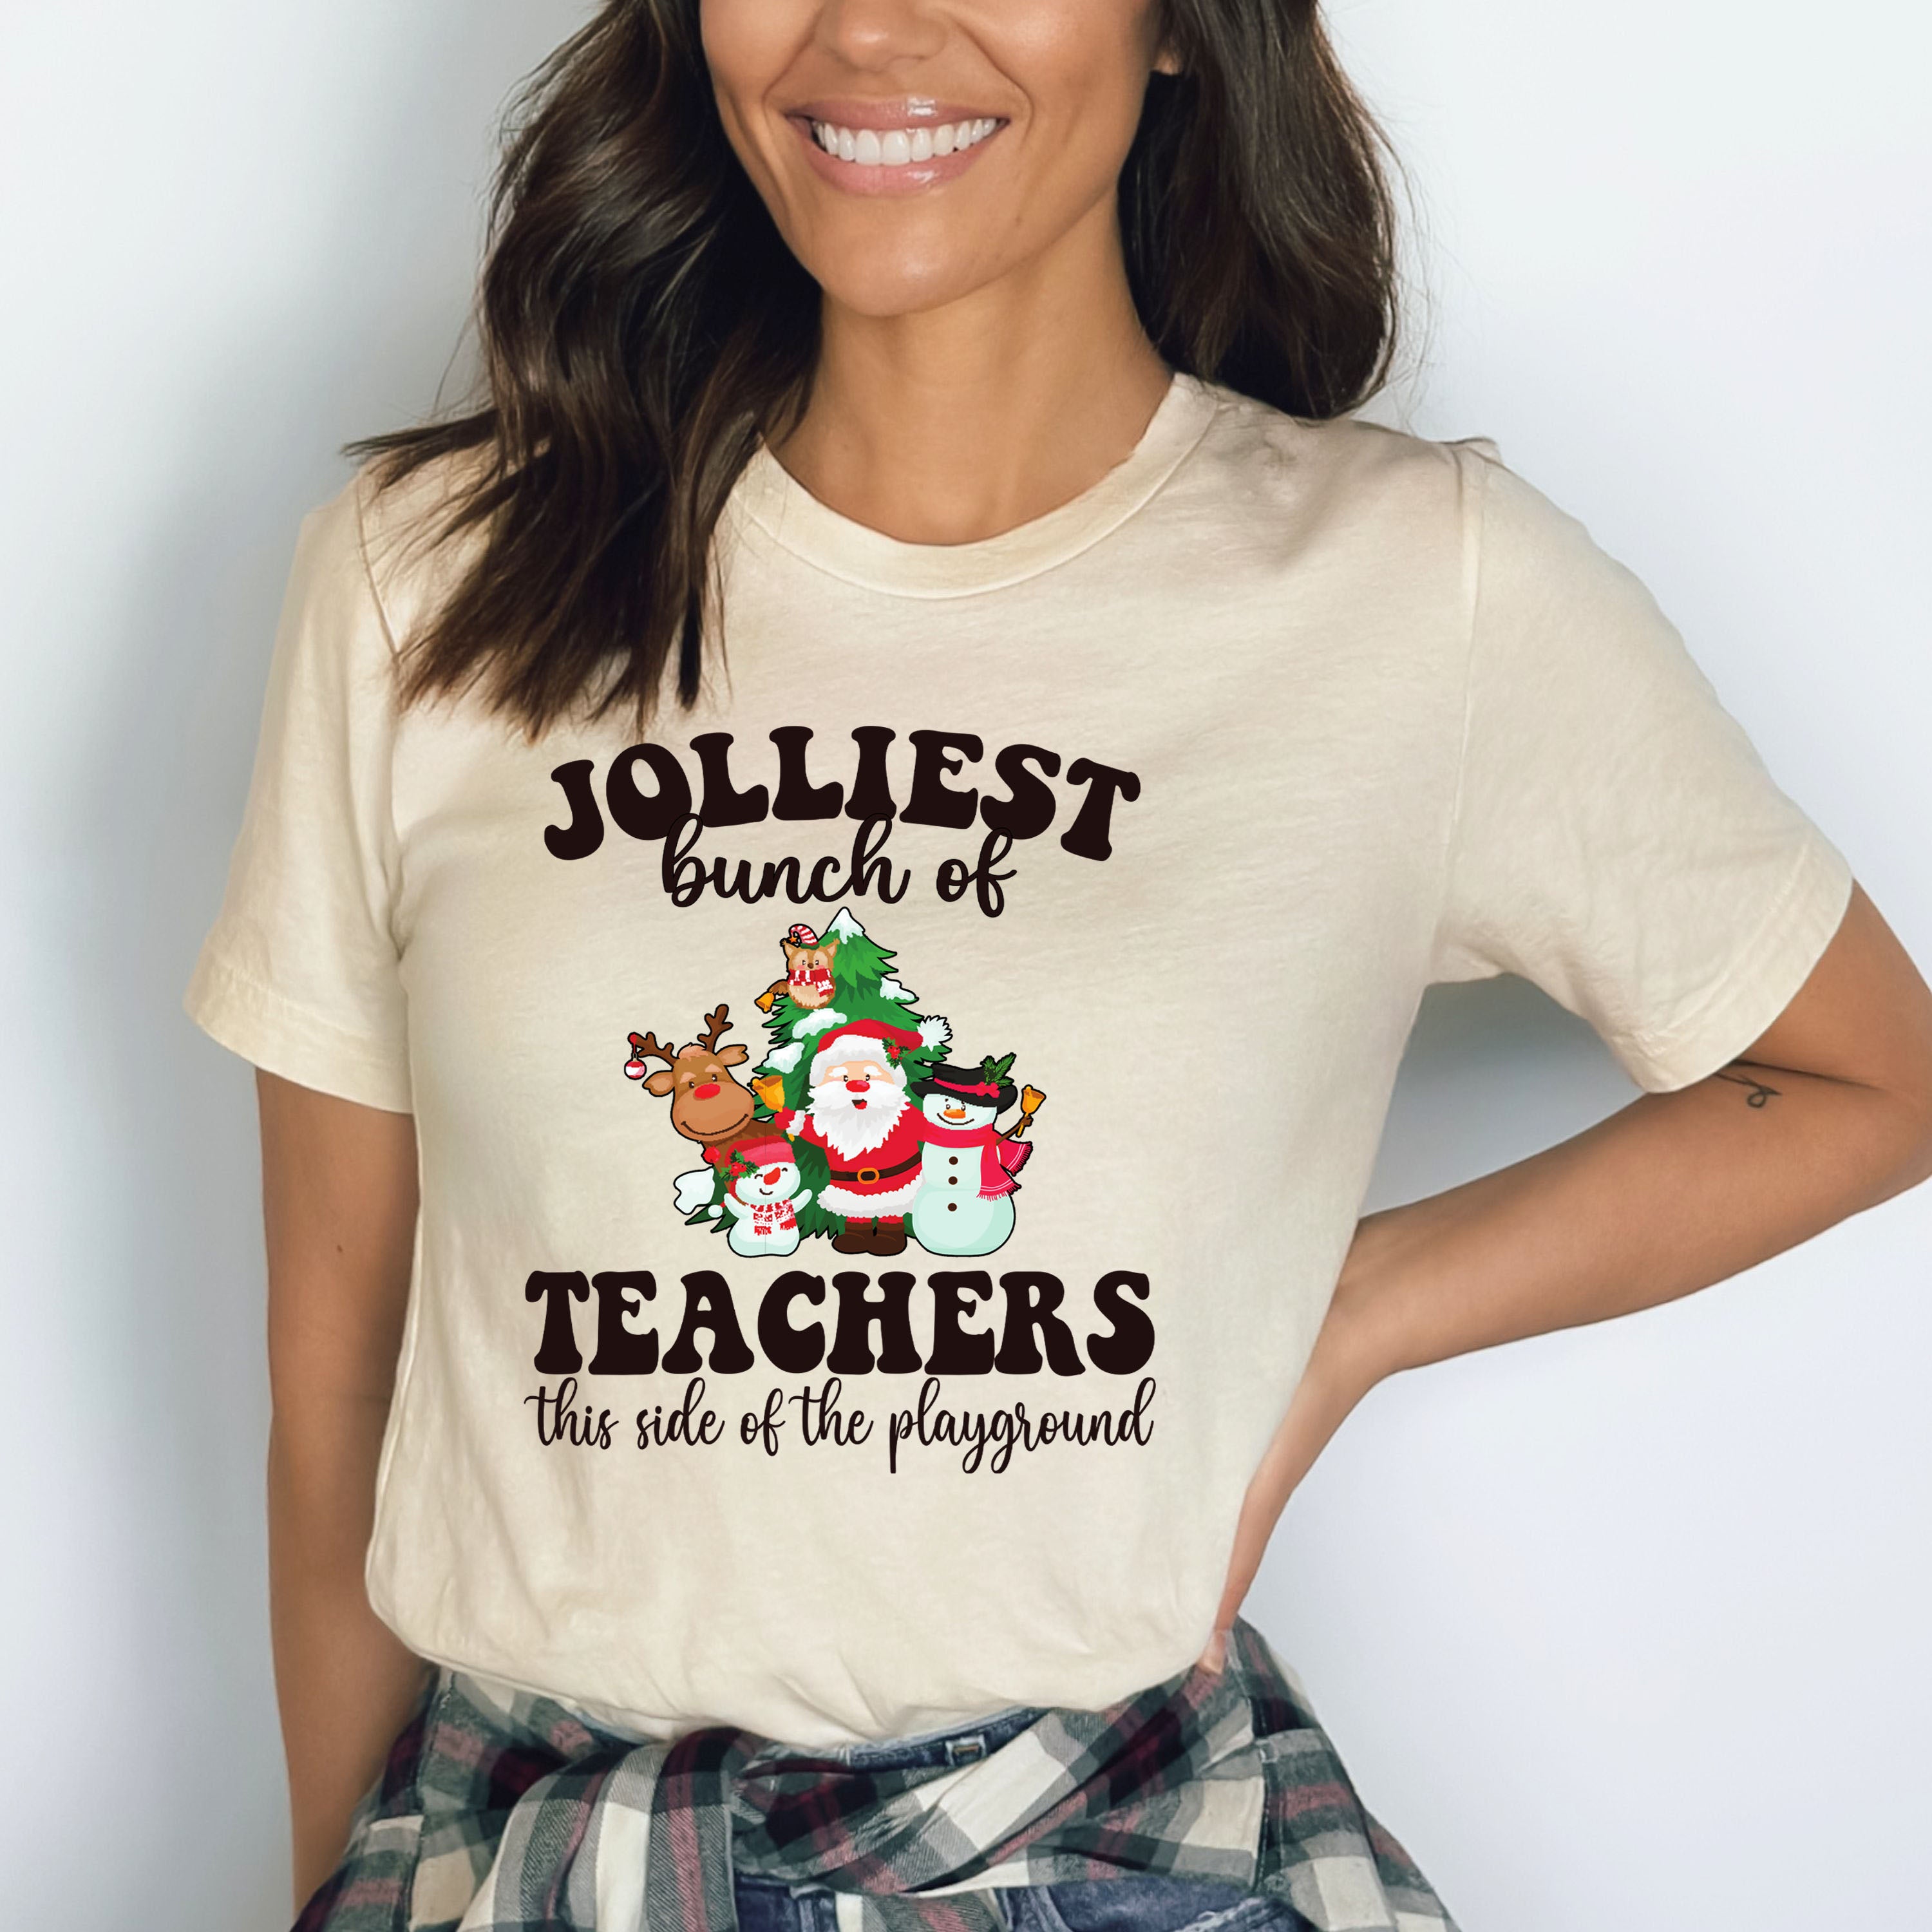 Jolliest Bunch Of Teachers - Bella Canvas